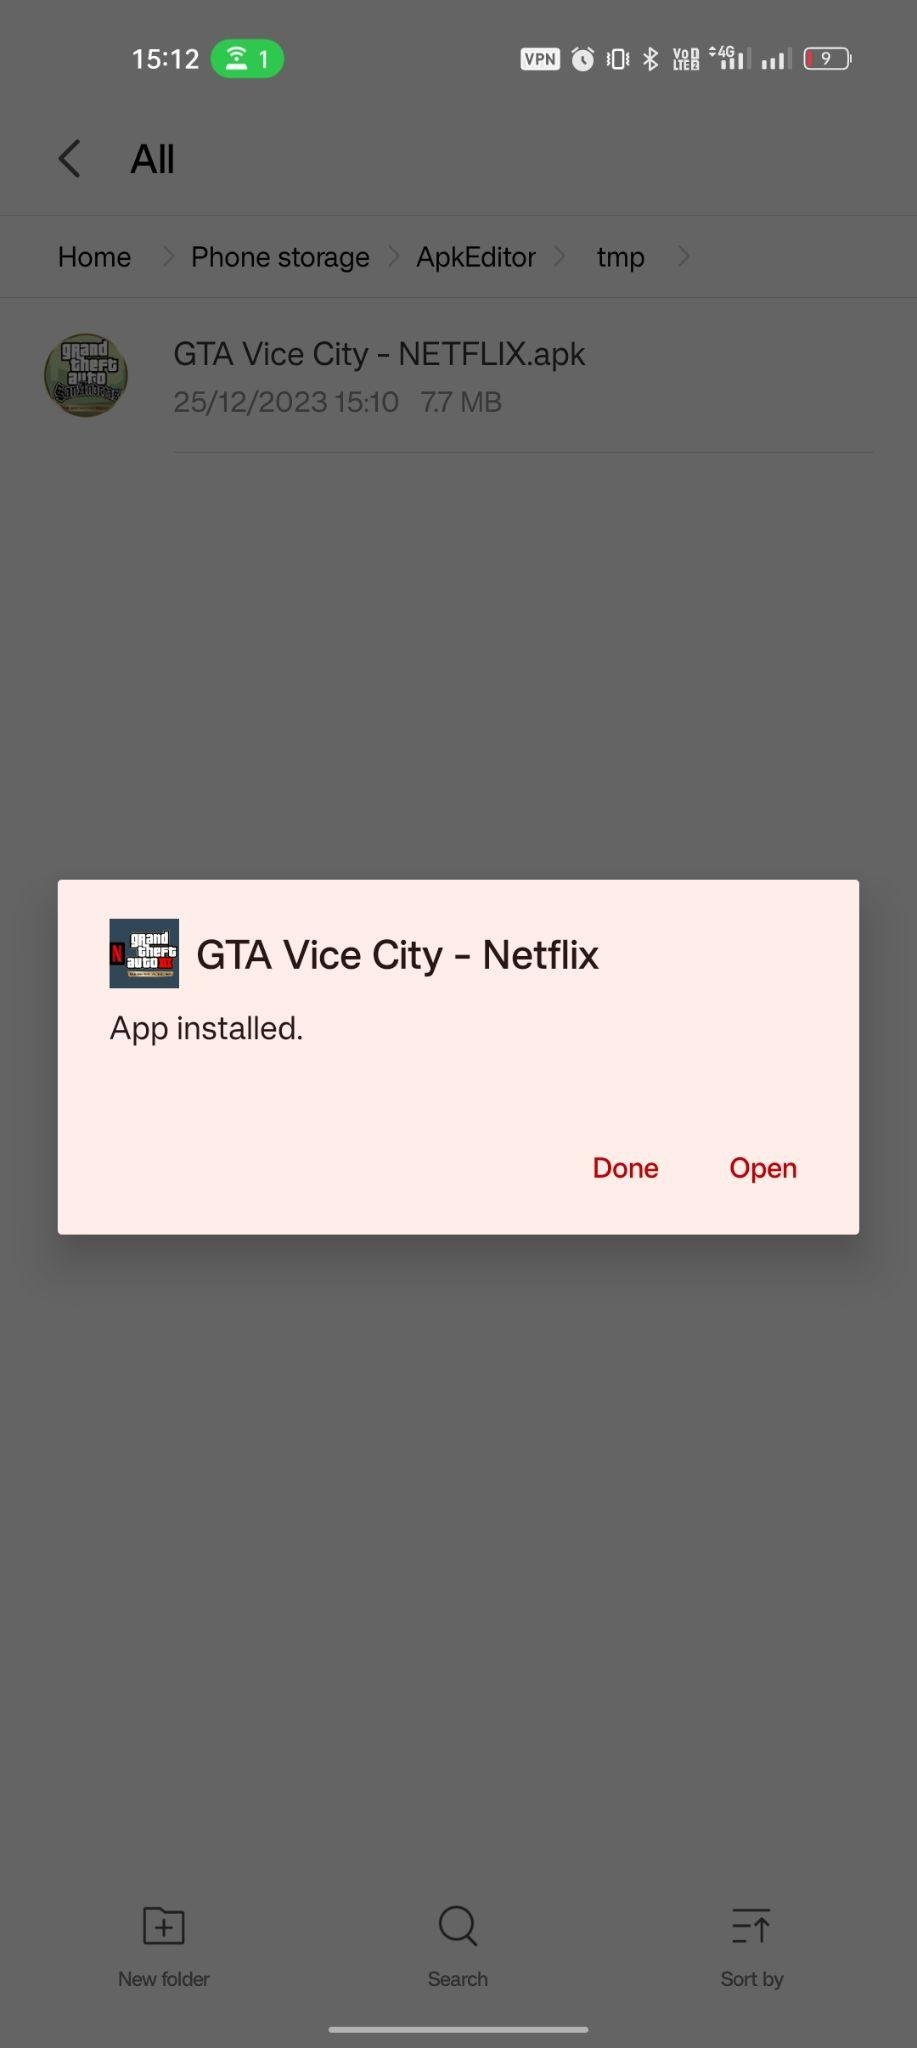 GTA: Vice City - Netflix apk installed